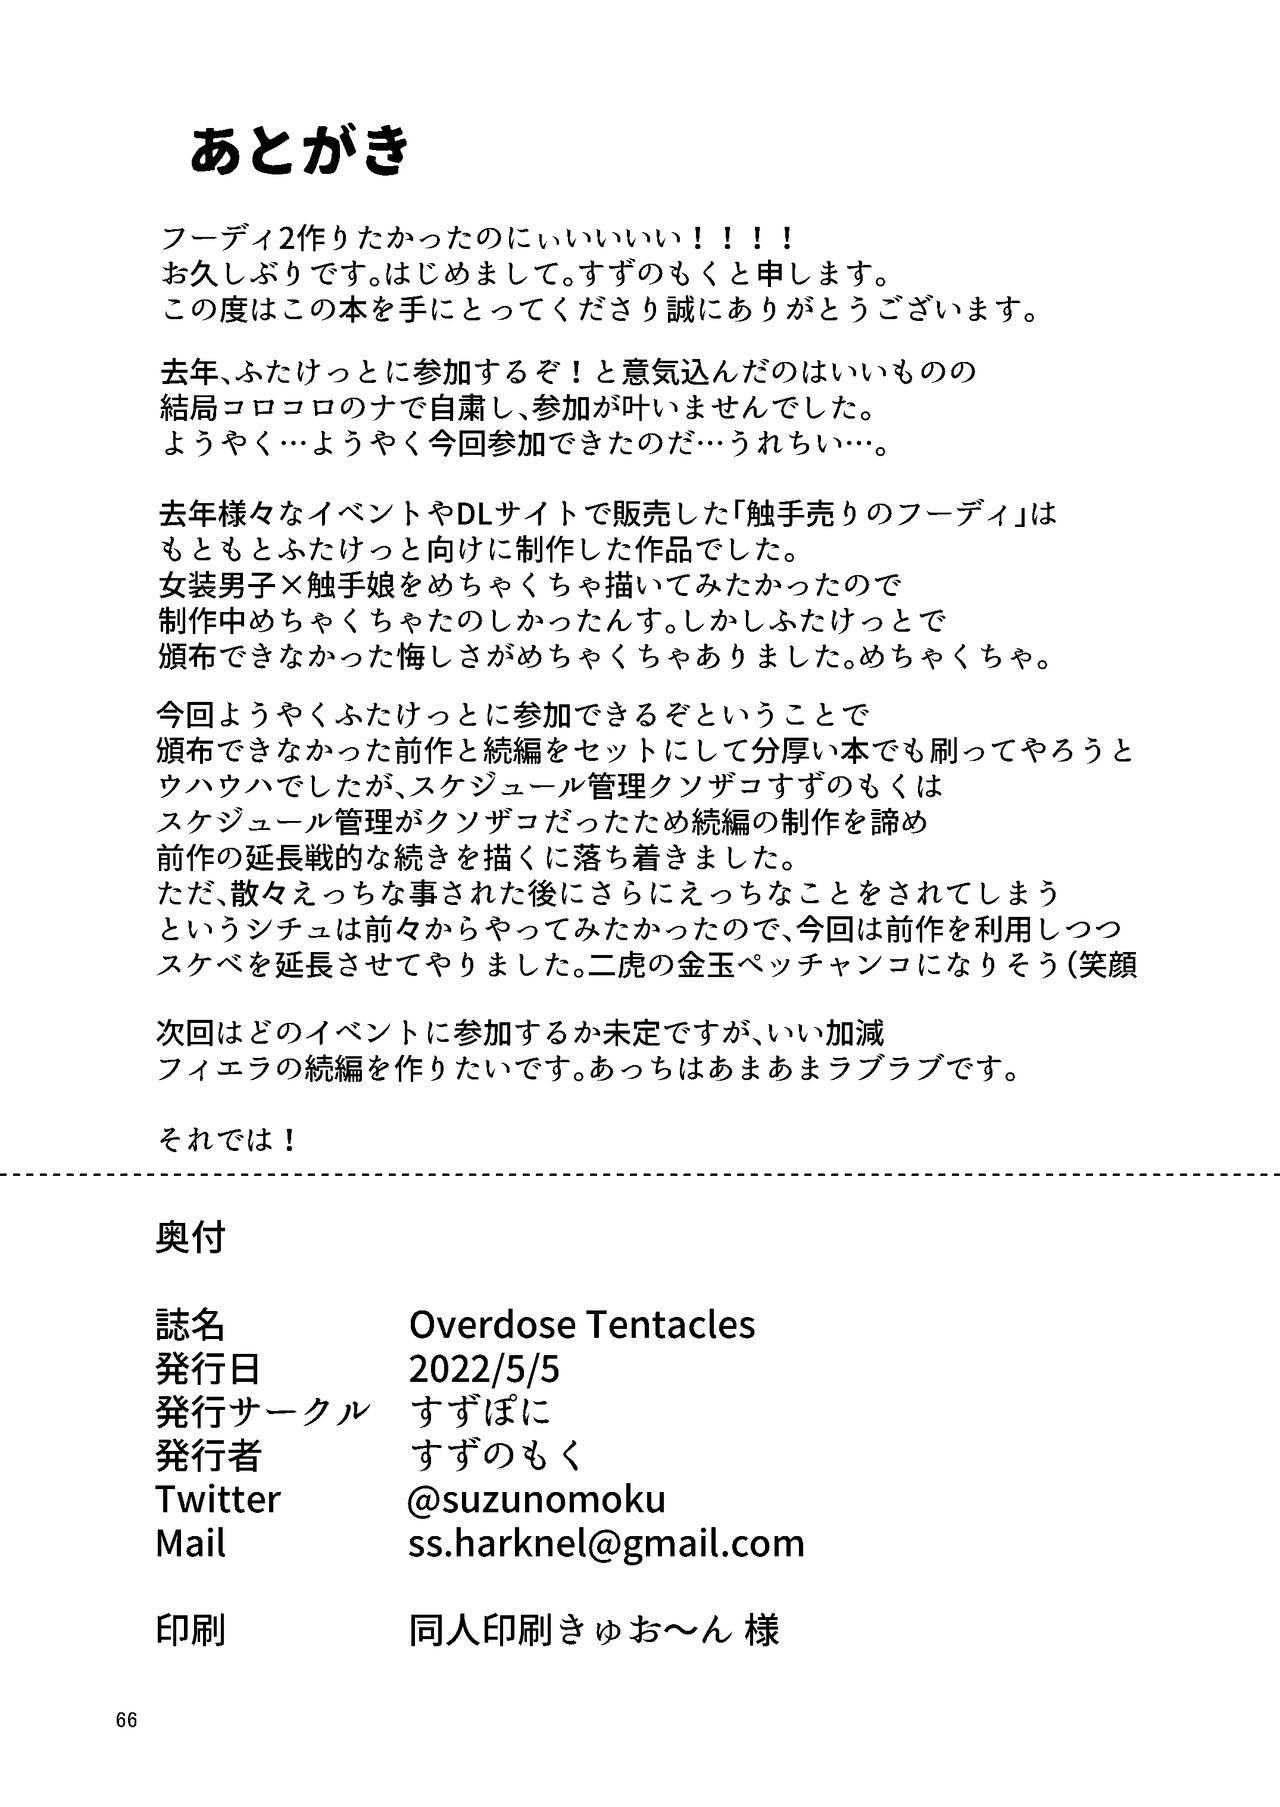 Overdose Tentacles Shokushu Uri no Hoodie special edition 64